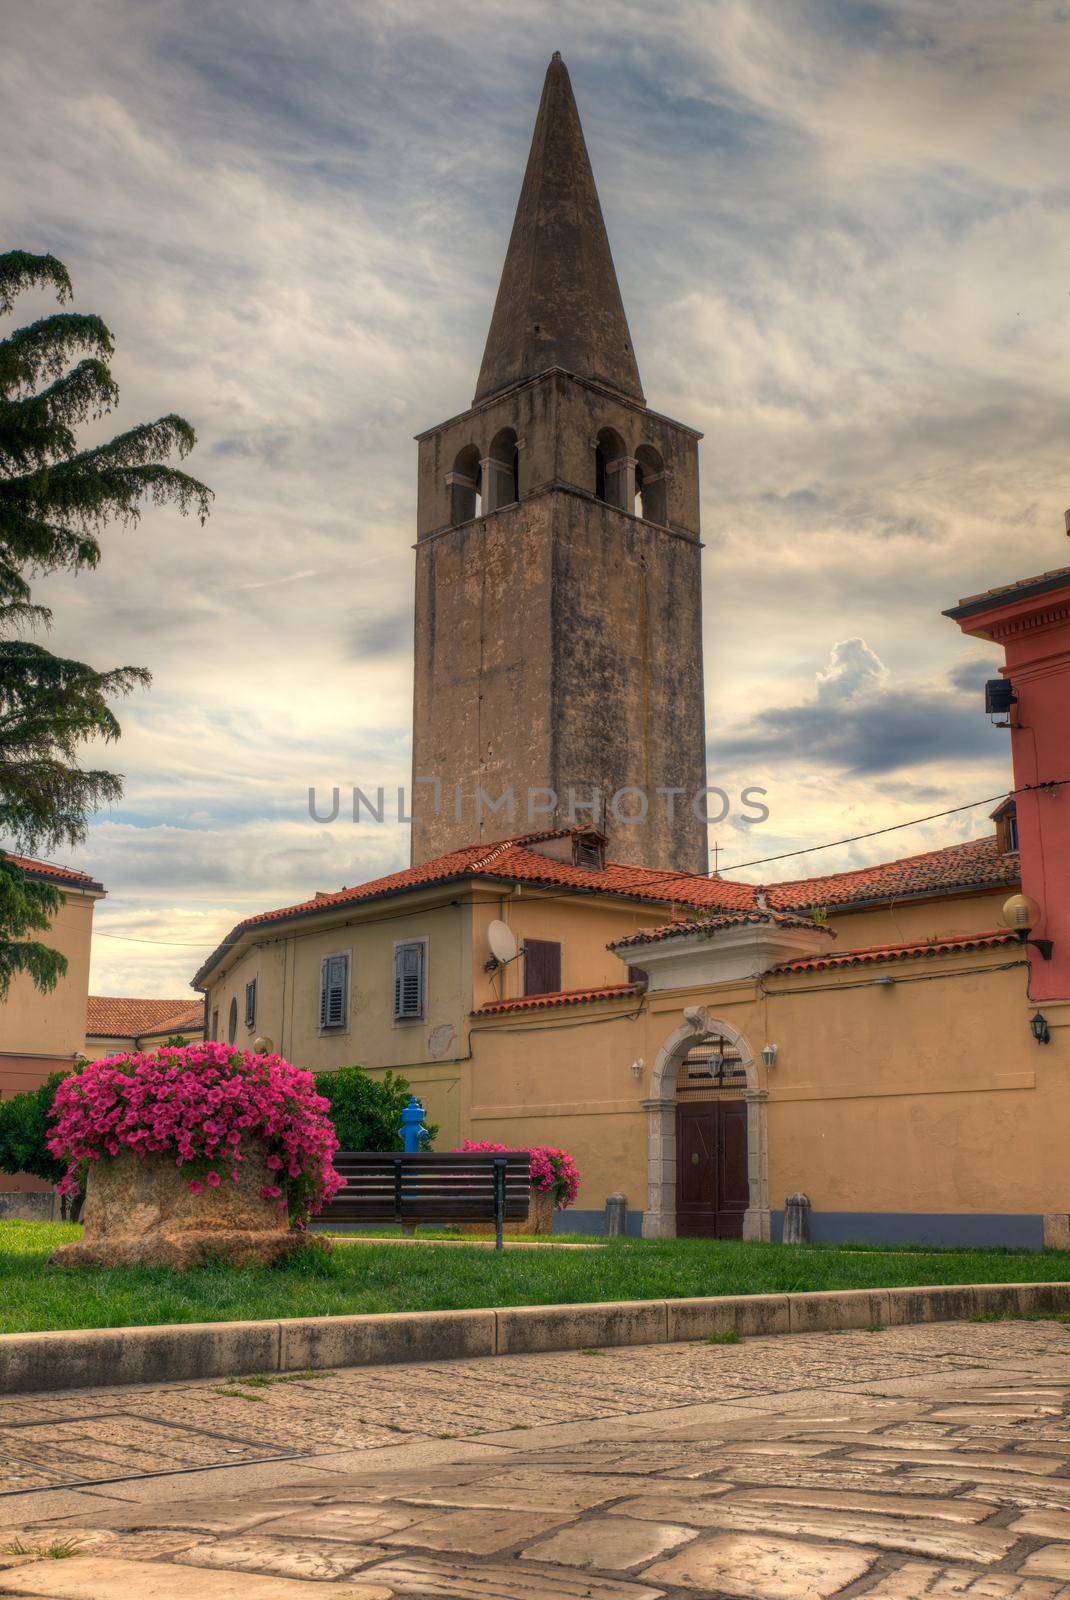 Belltower of the Euphrasian Basilica in Porec, Istria. Croatia